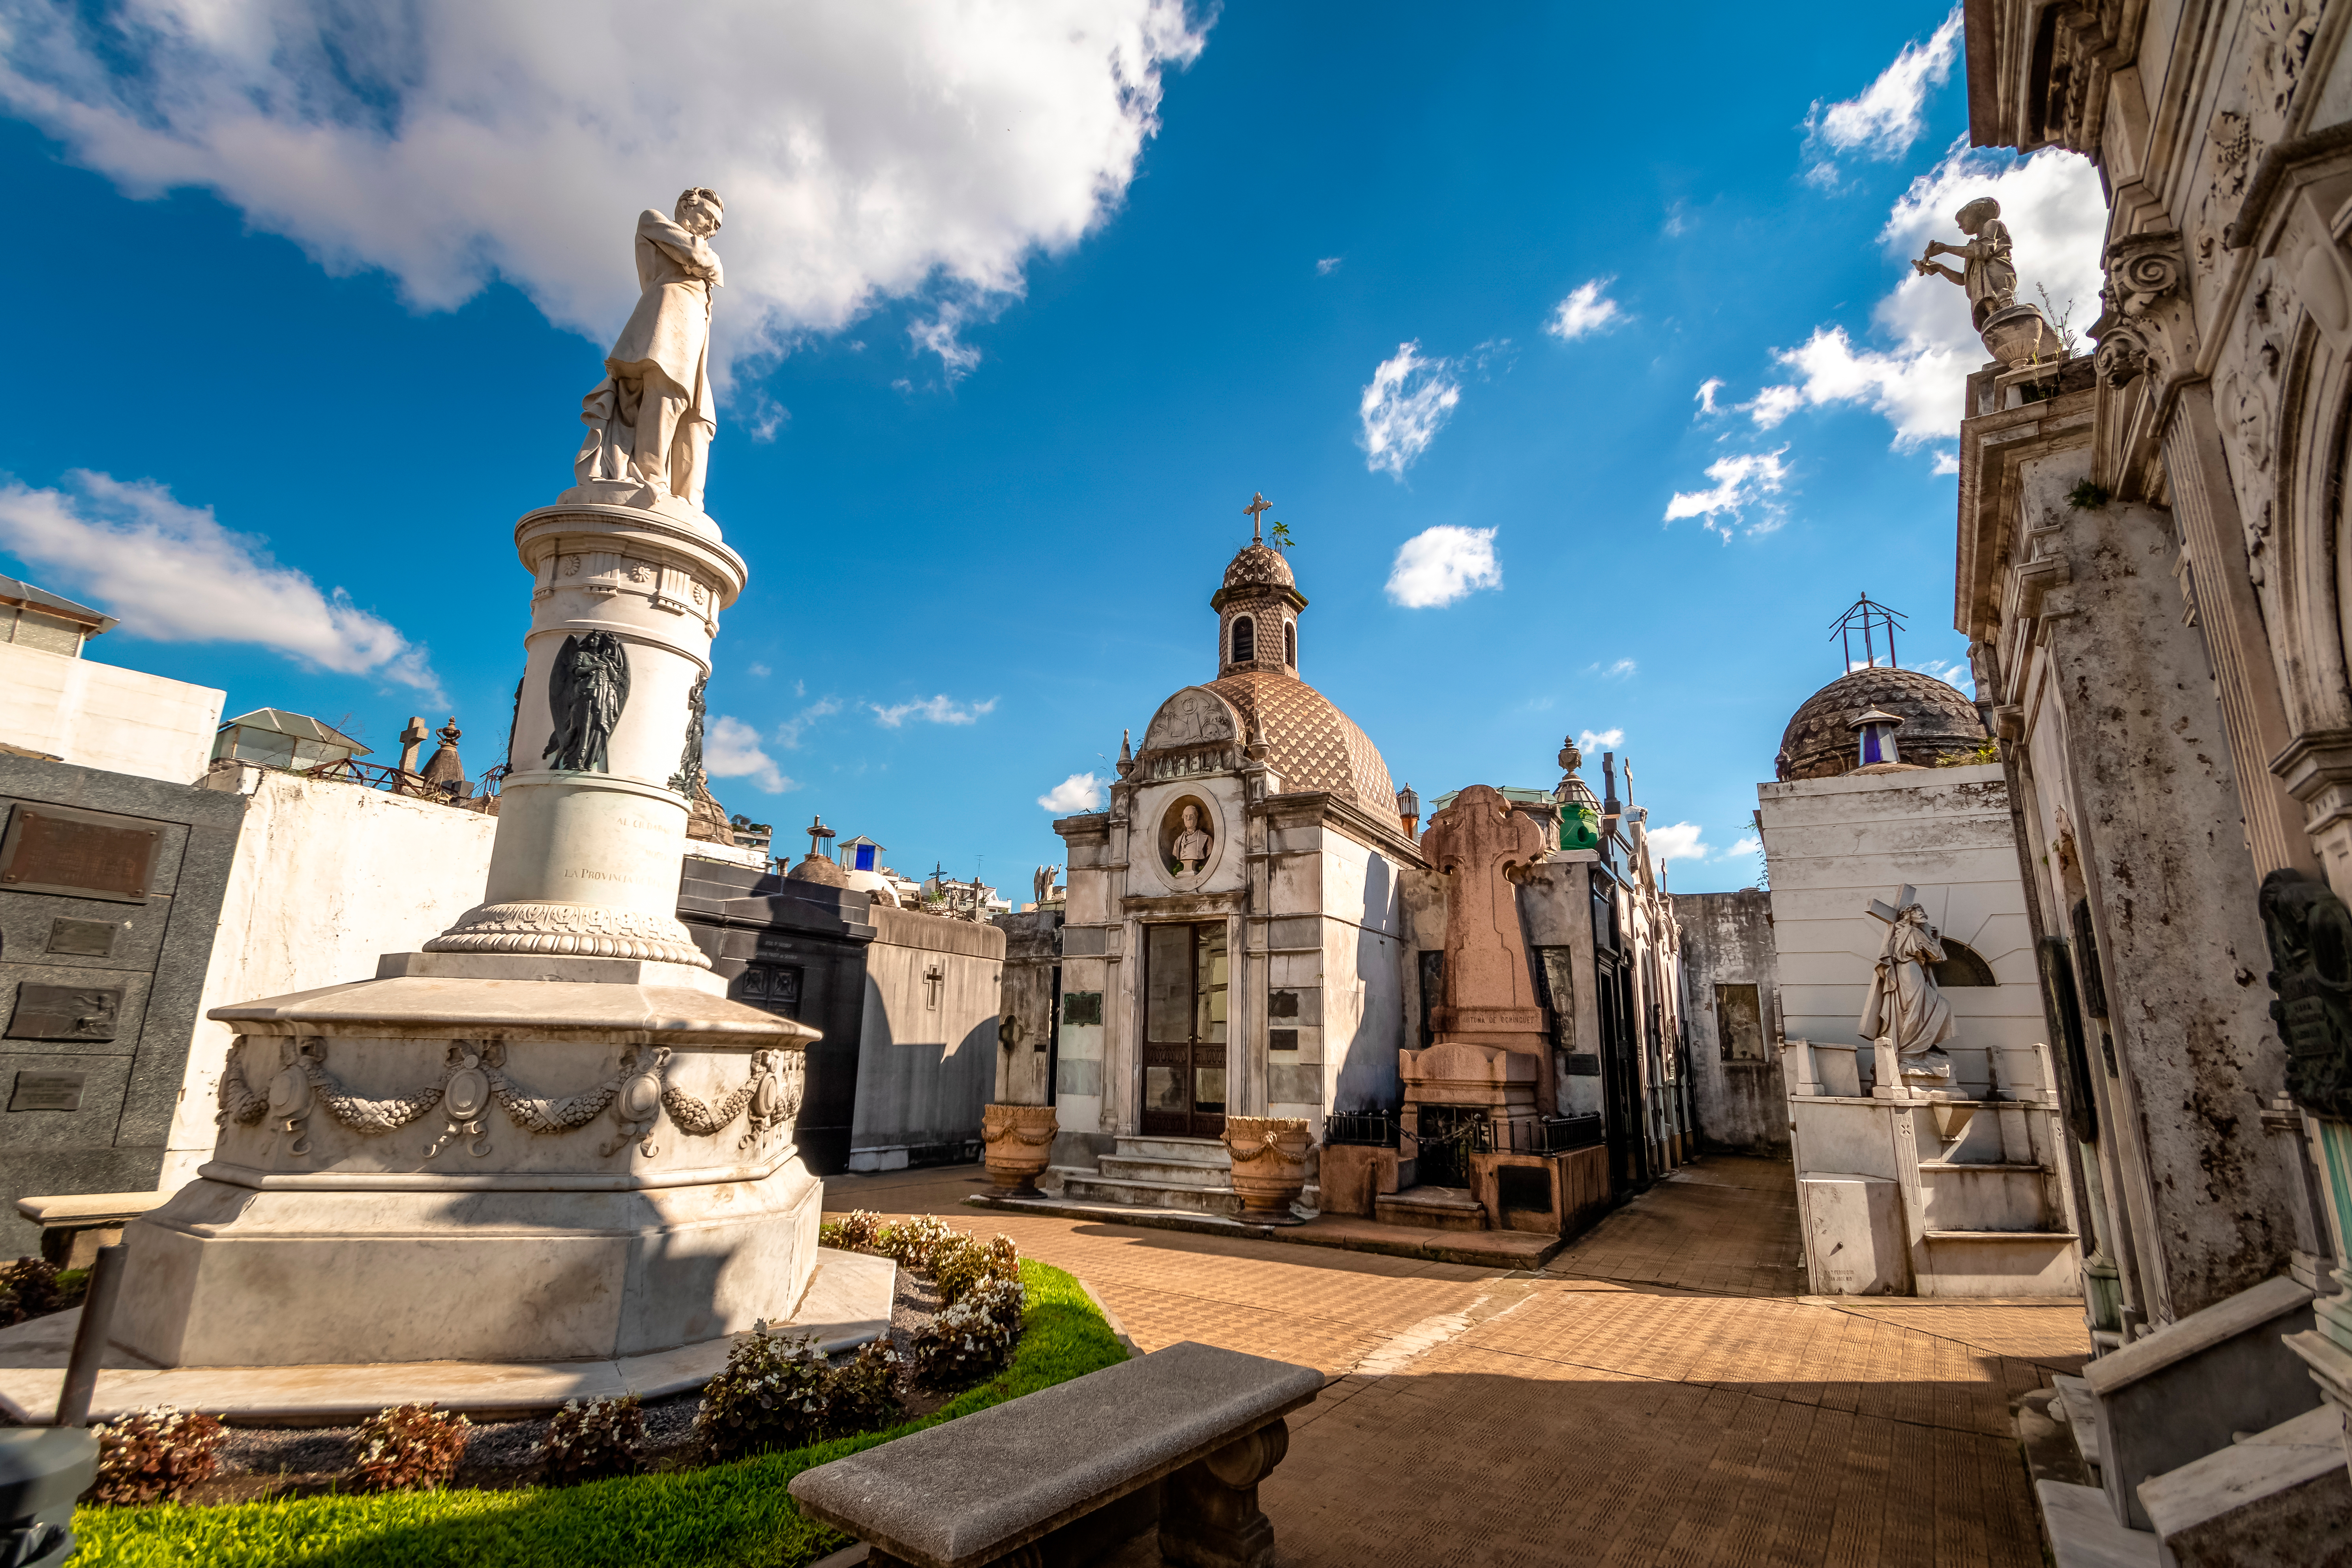 El emblemático Cementerio de la Recoleta en la Capital Federal fue construido sobre terrenos expropiados a la Iglesia, sin indemnización